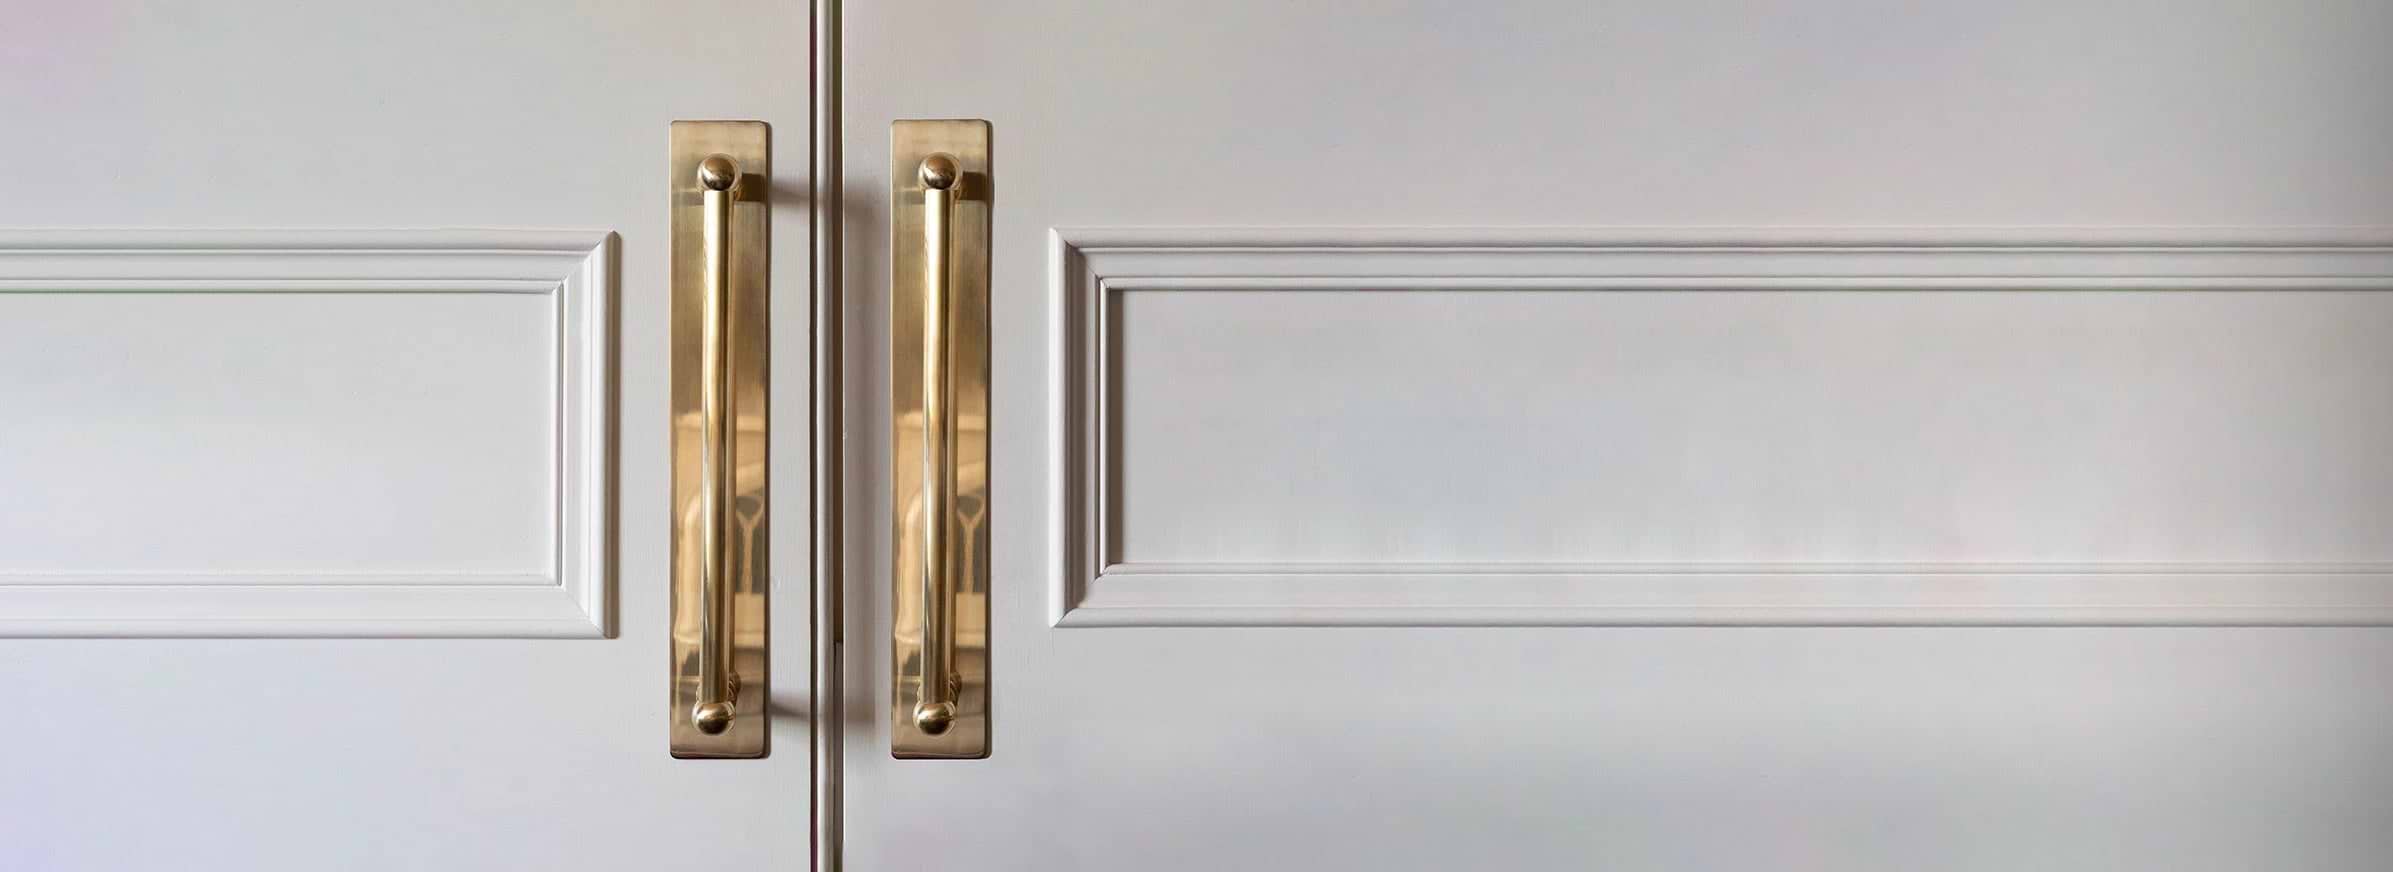 elegant antique brass door handle on white door